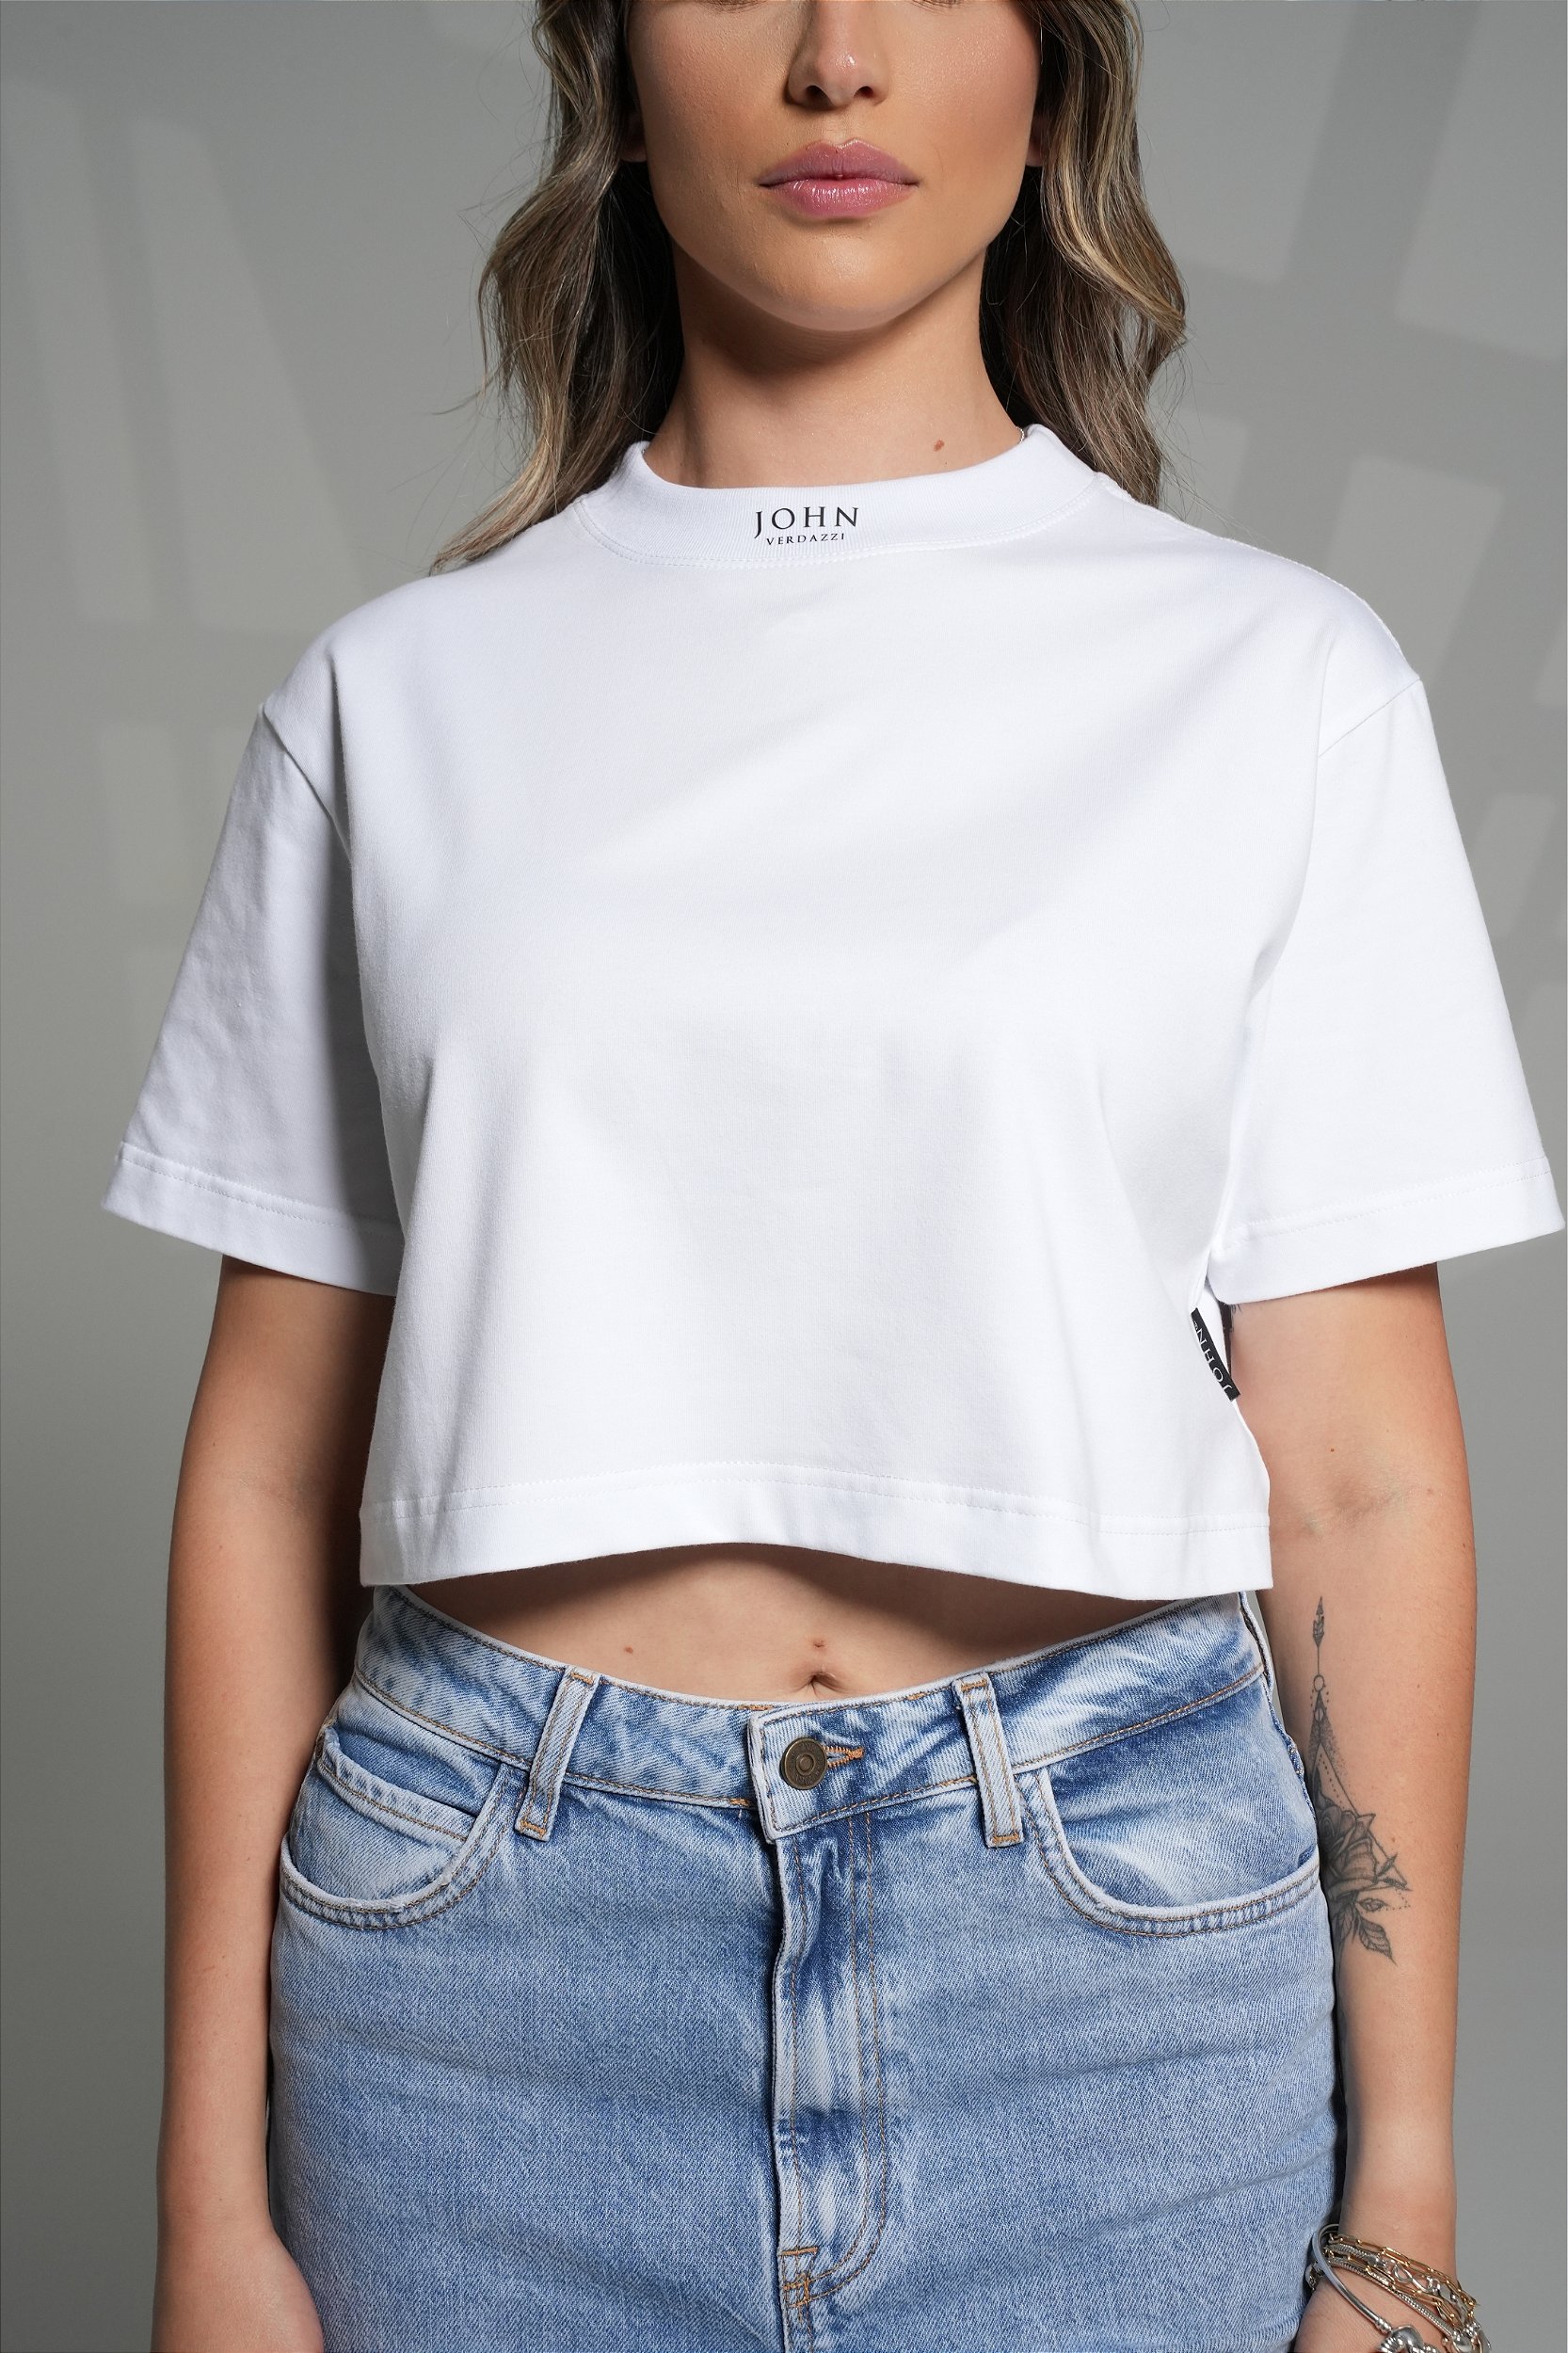 T-shirt Cropped Oversized De Algodão Orgânico Off White, 59% OFF